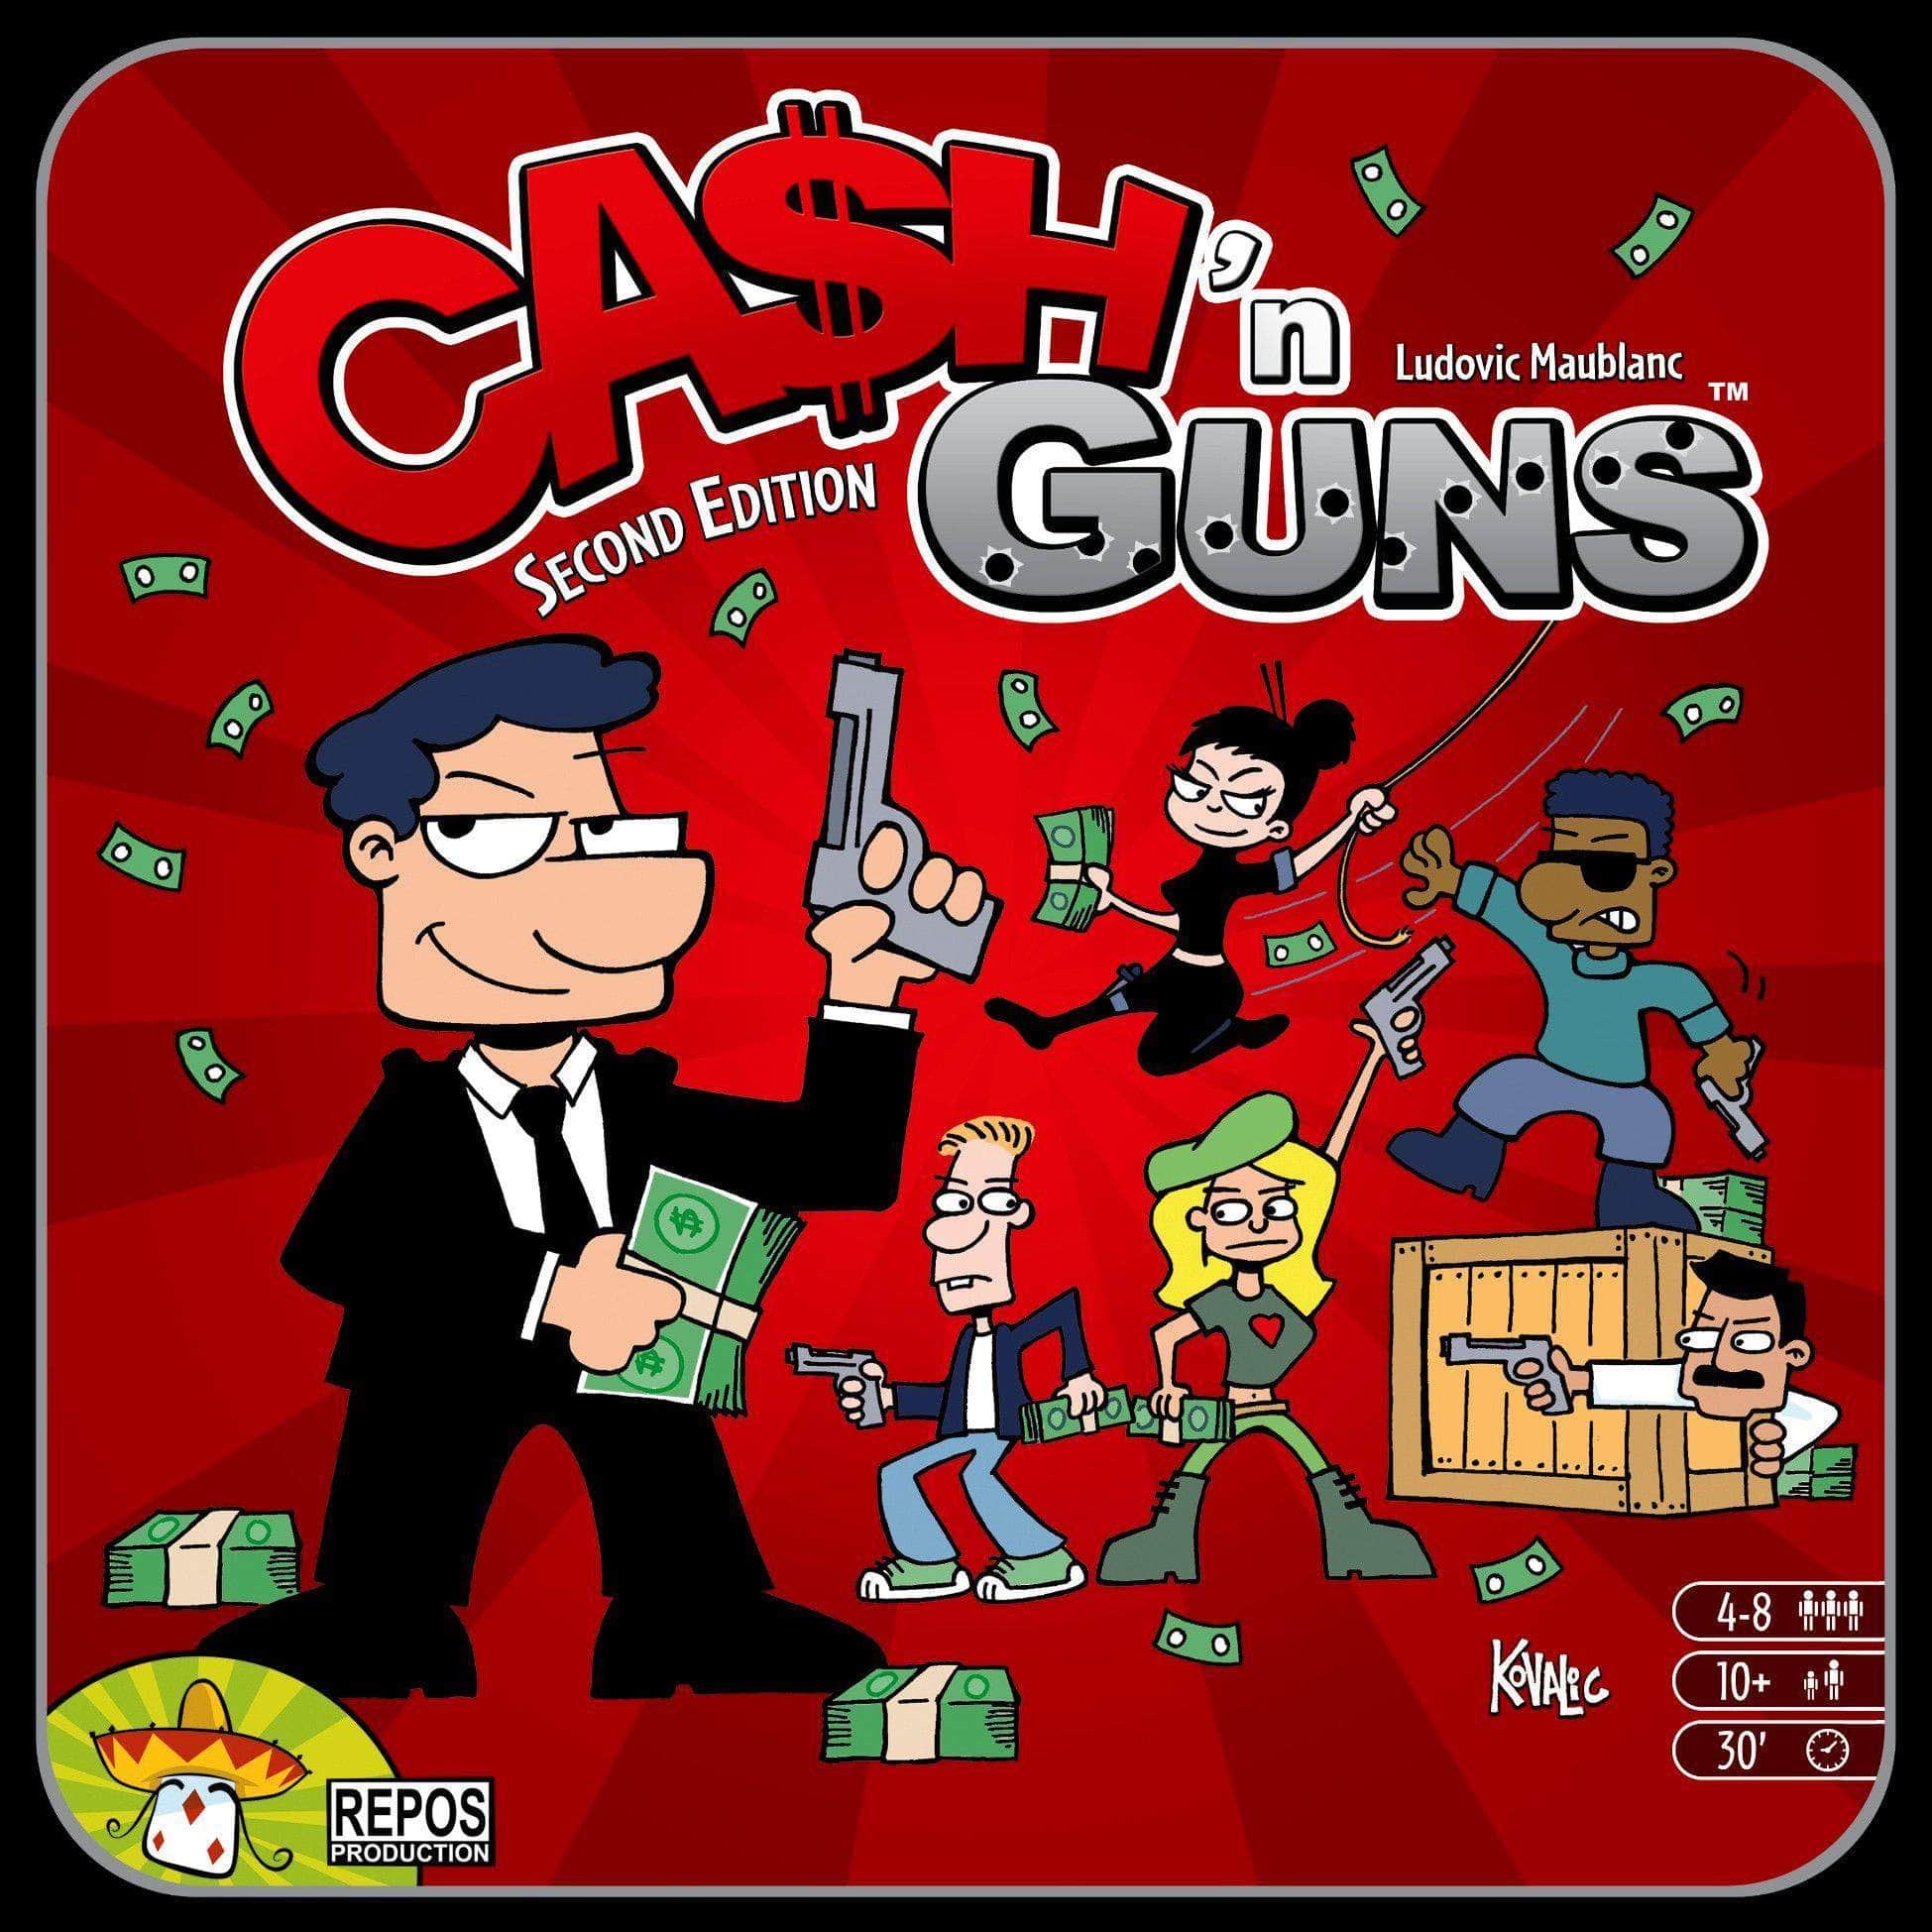 Ca $ H 'N Guns (Second Edition) (wydanie detaliczne) Gra planszowa detaliczna Asterion Press KS800399A